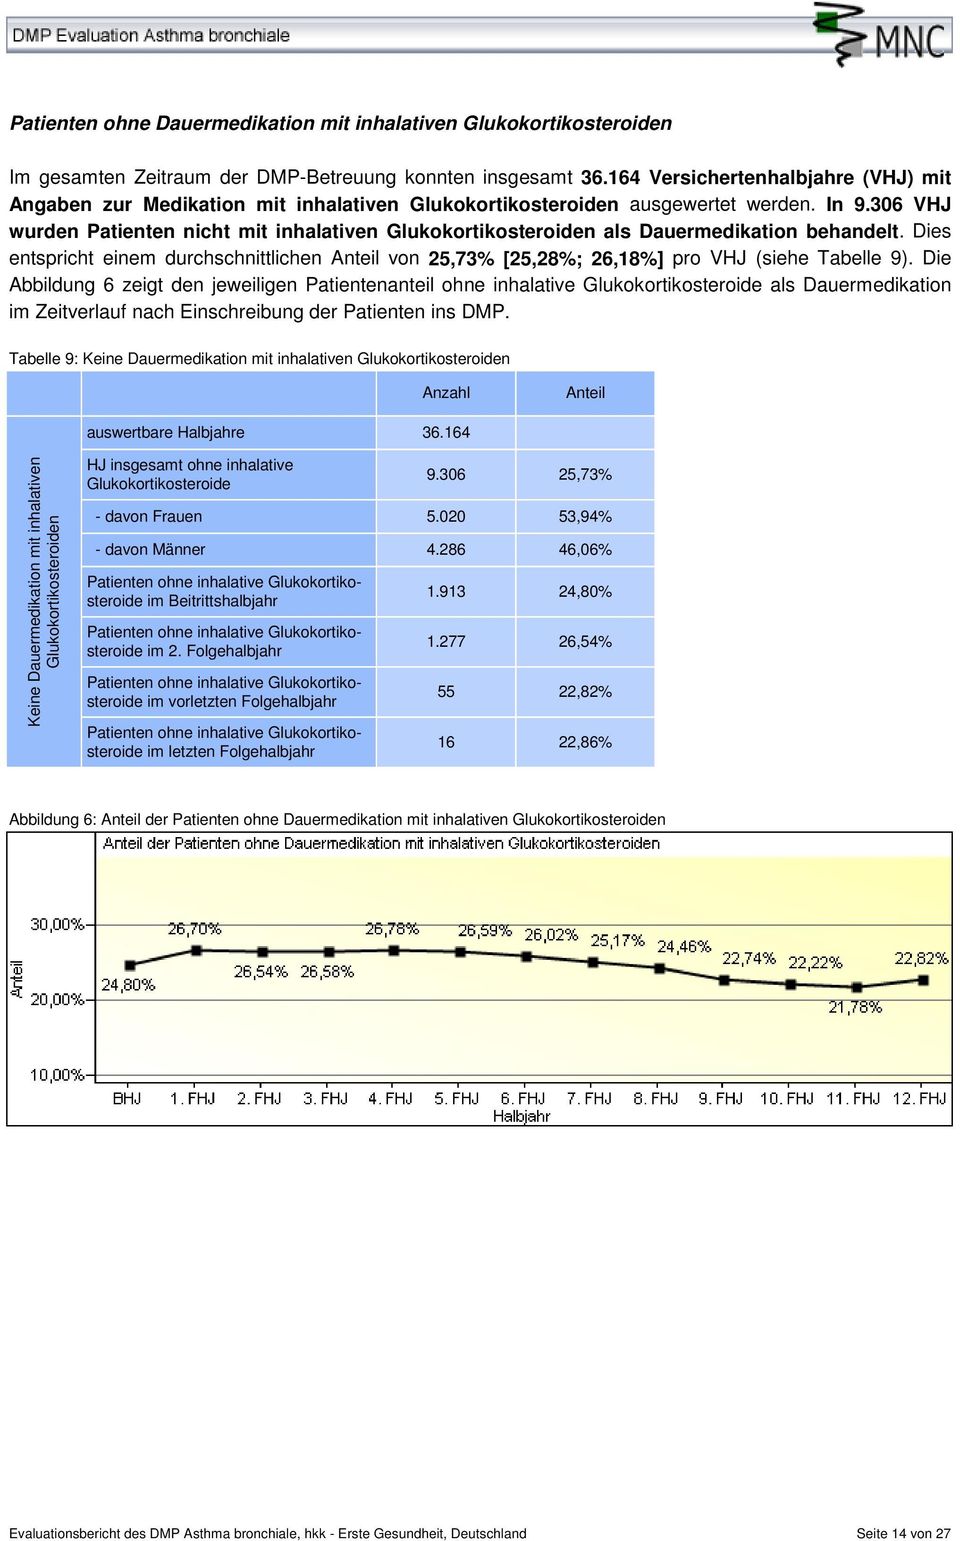 306 VHJ wurden Patienten nicht mit inhalativen Glukokortikosteroiden als Dauermedikation behandelt. Dies entspricht einem durchschnittlichen von 25,73% [25,28%; 26,18%] pro VHJ (siehe Tabelle 9).